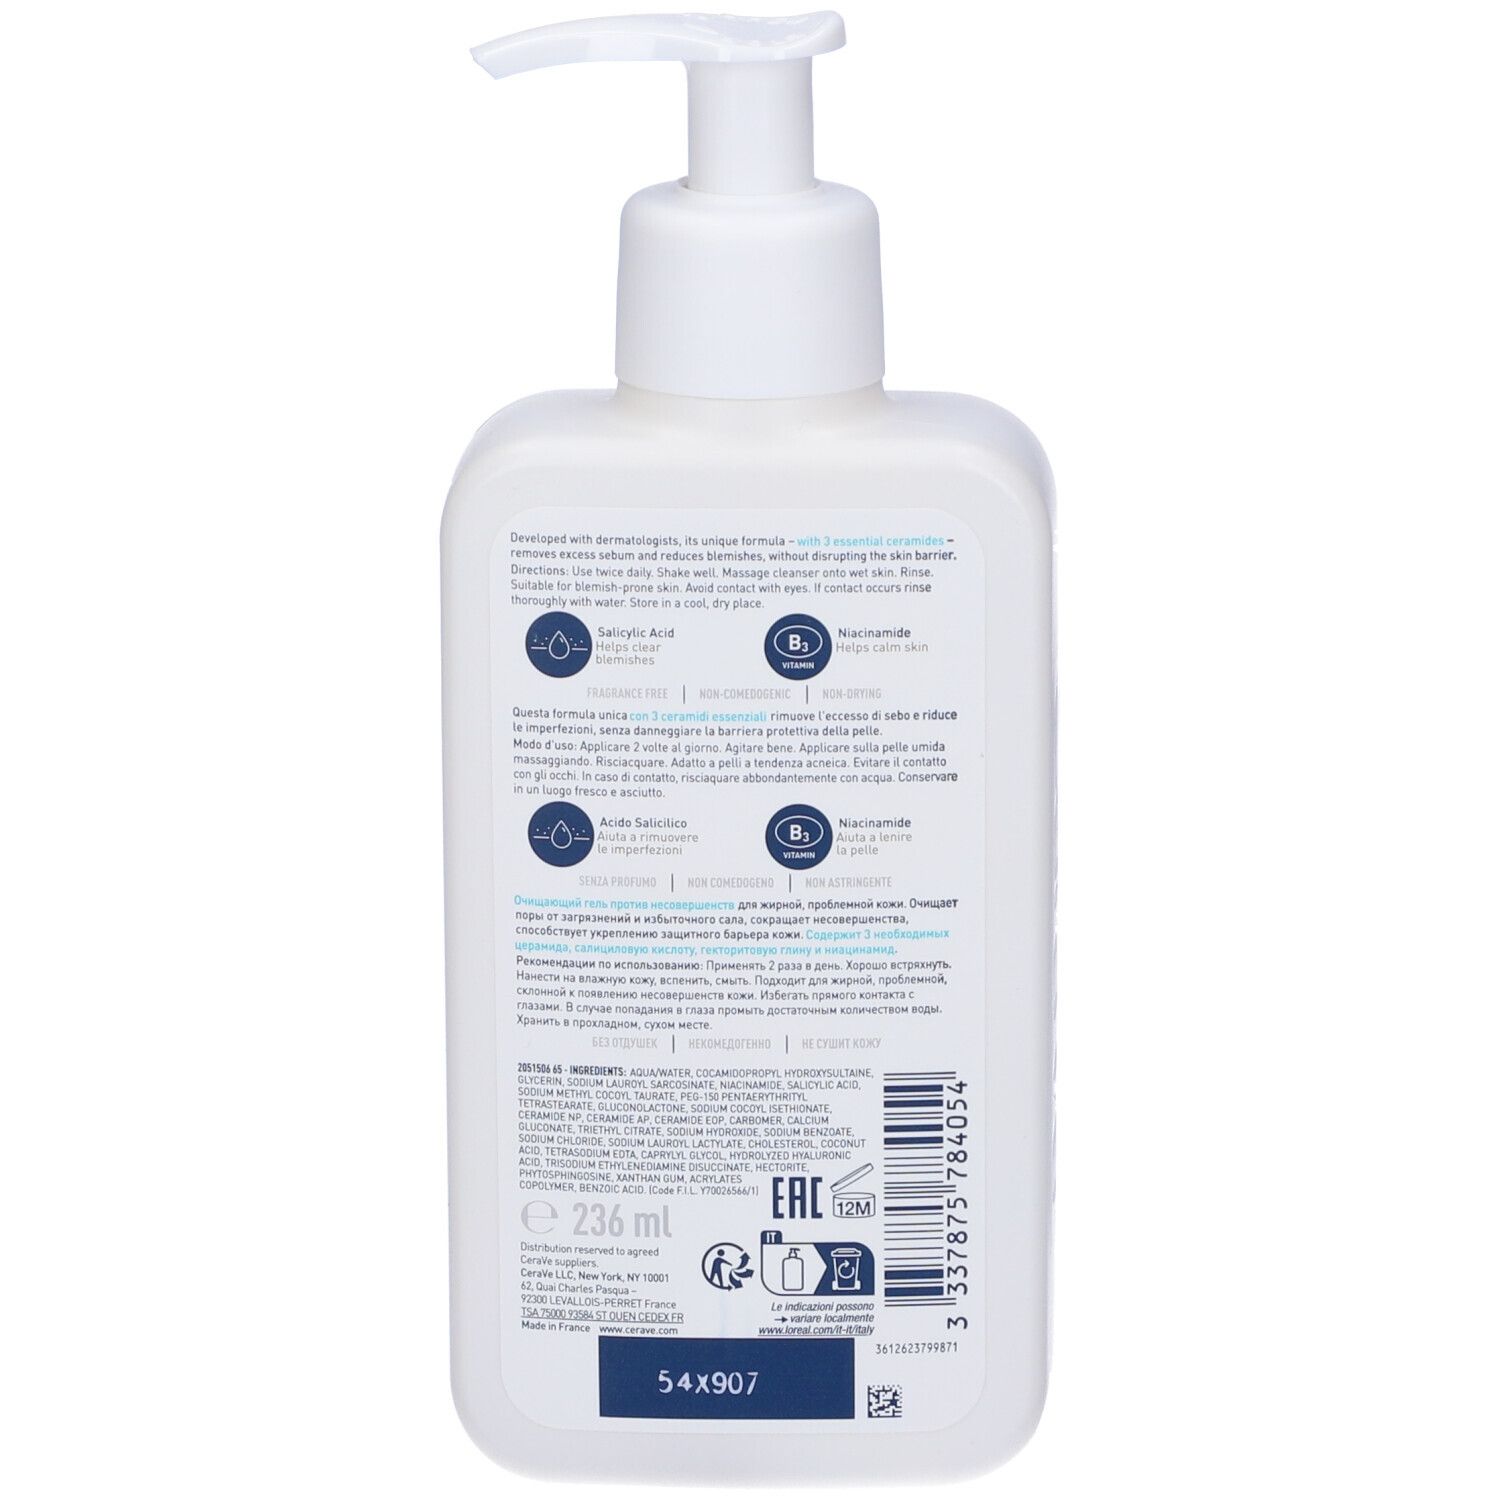 CeraVe Detergente anti imperfezioni Deterge i pori, rimuove lo sporco e le imperfezioni 236 ml